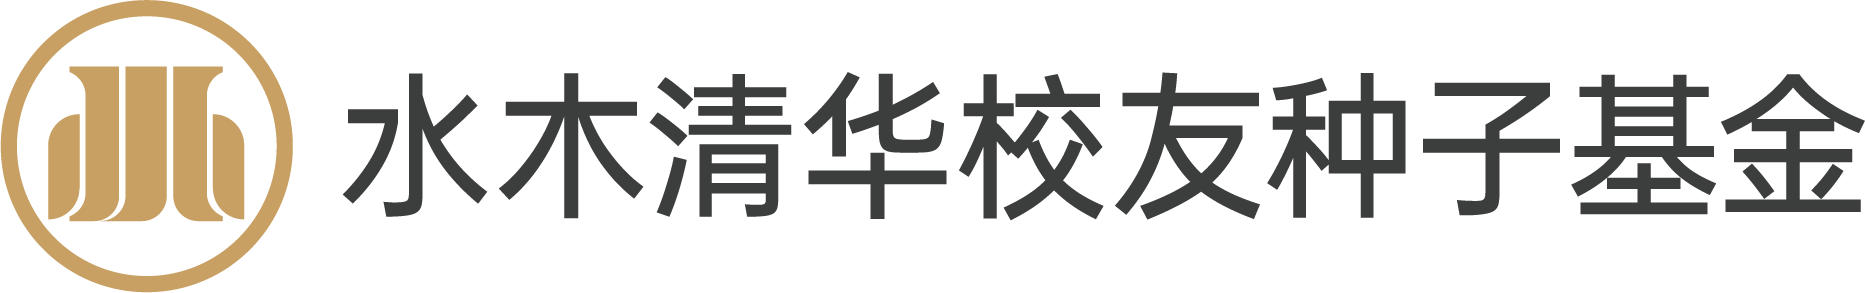 水木logo.png